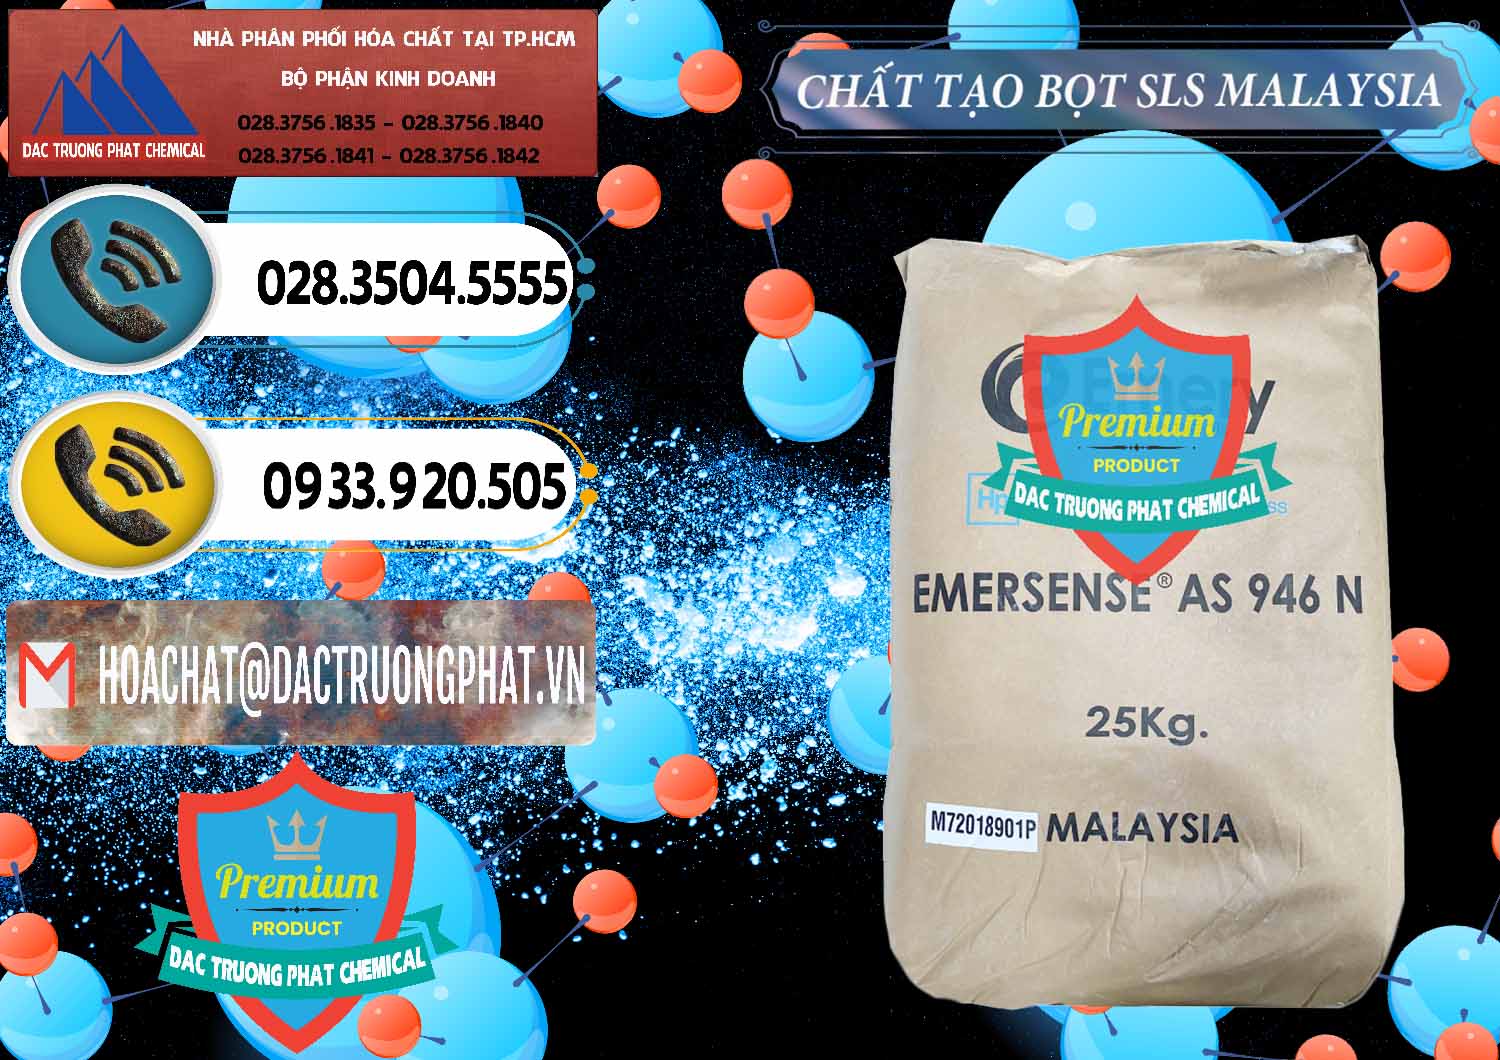 Nhà nhập khẩu - bán Chất Tạo Bọt SLS Emery - Emersense AS 946N Mã Lai Malaysia - 0423 - Chuyên bán _ cung cấp hóa chất tại TP.HCM - hoachatdetnhuom.vn